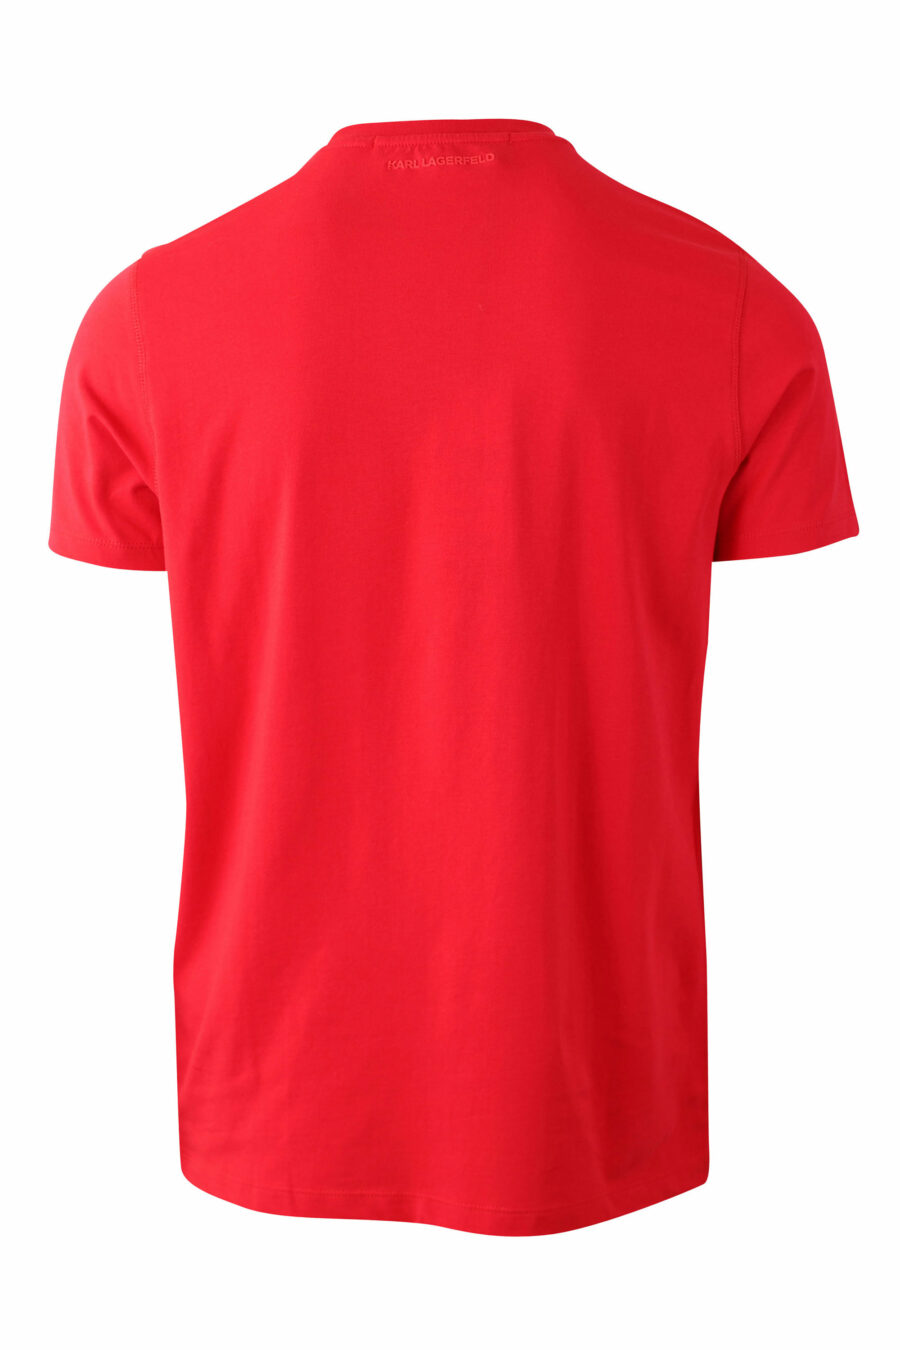 Camiseta roja con maxilogo "karl" silueta - IMG 0049 1